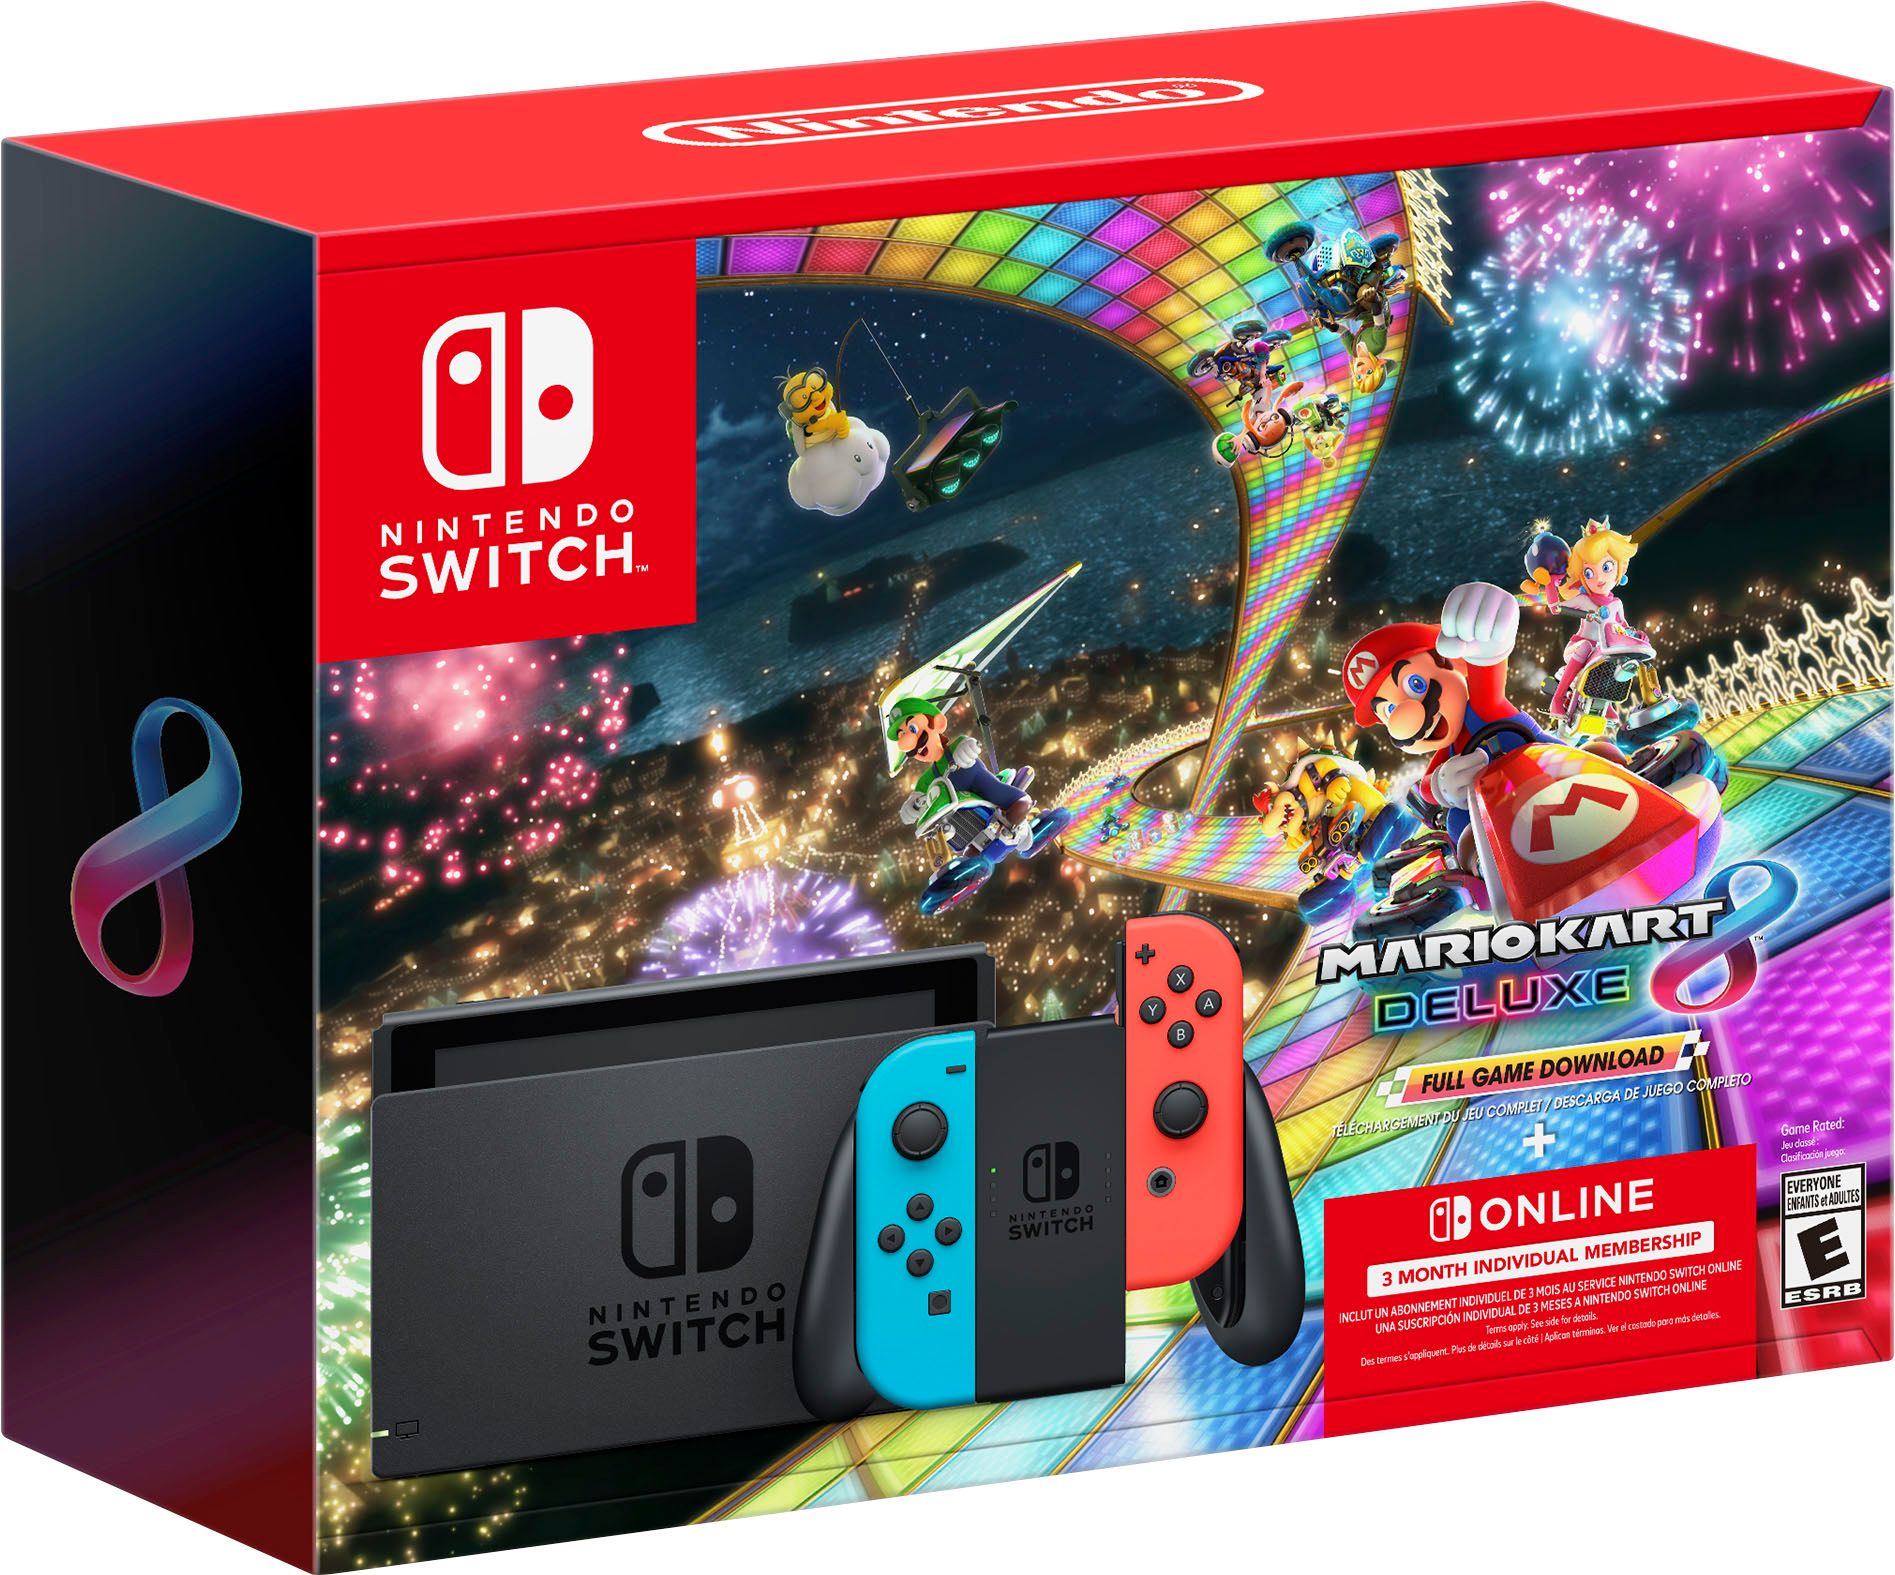 Nintendo Switch Neon Joy-Con + Mario Kart 8 Deluxe (GameDownload) + 3 Month Nintendo Switch Onlin... | Best Buy U.S.